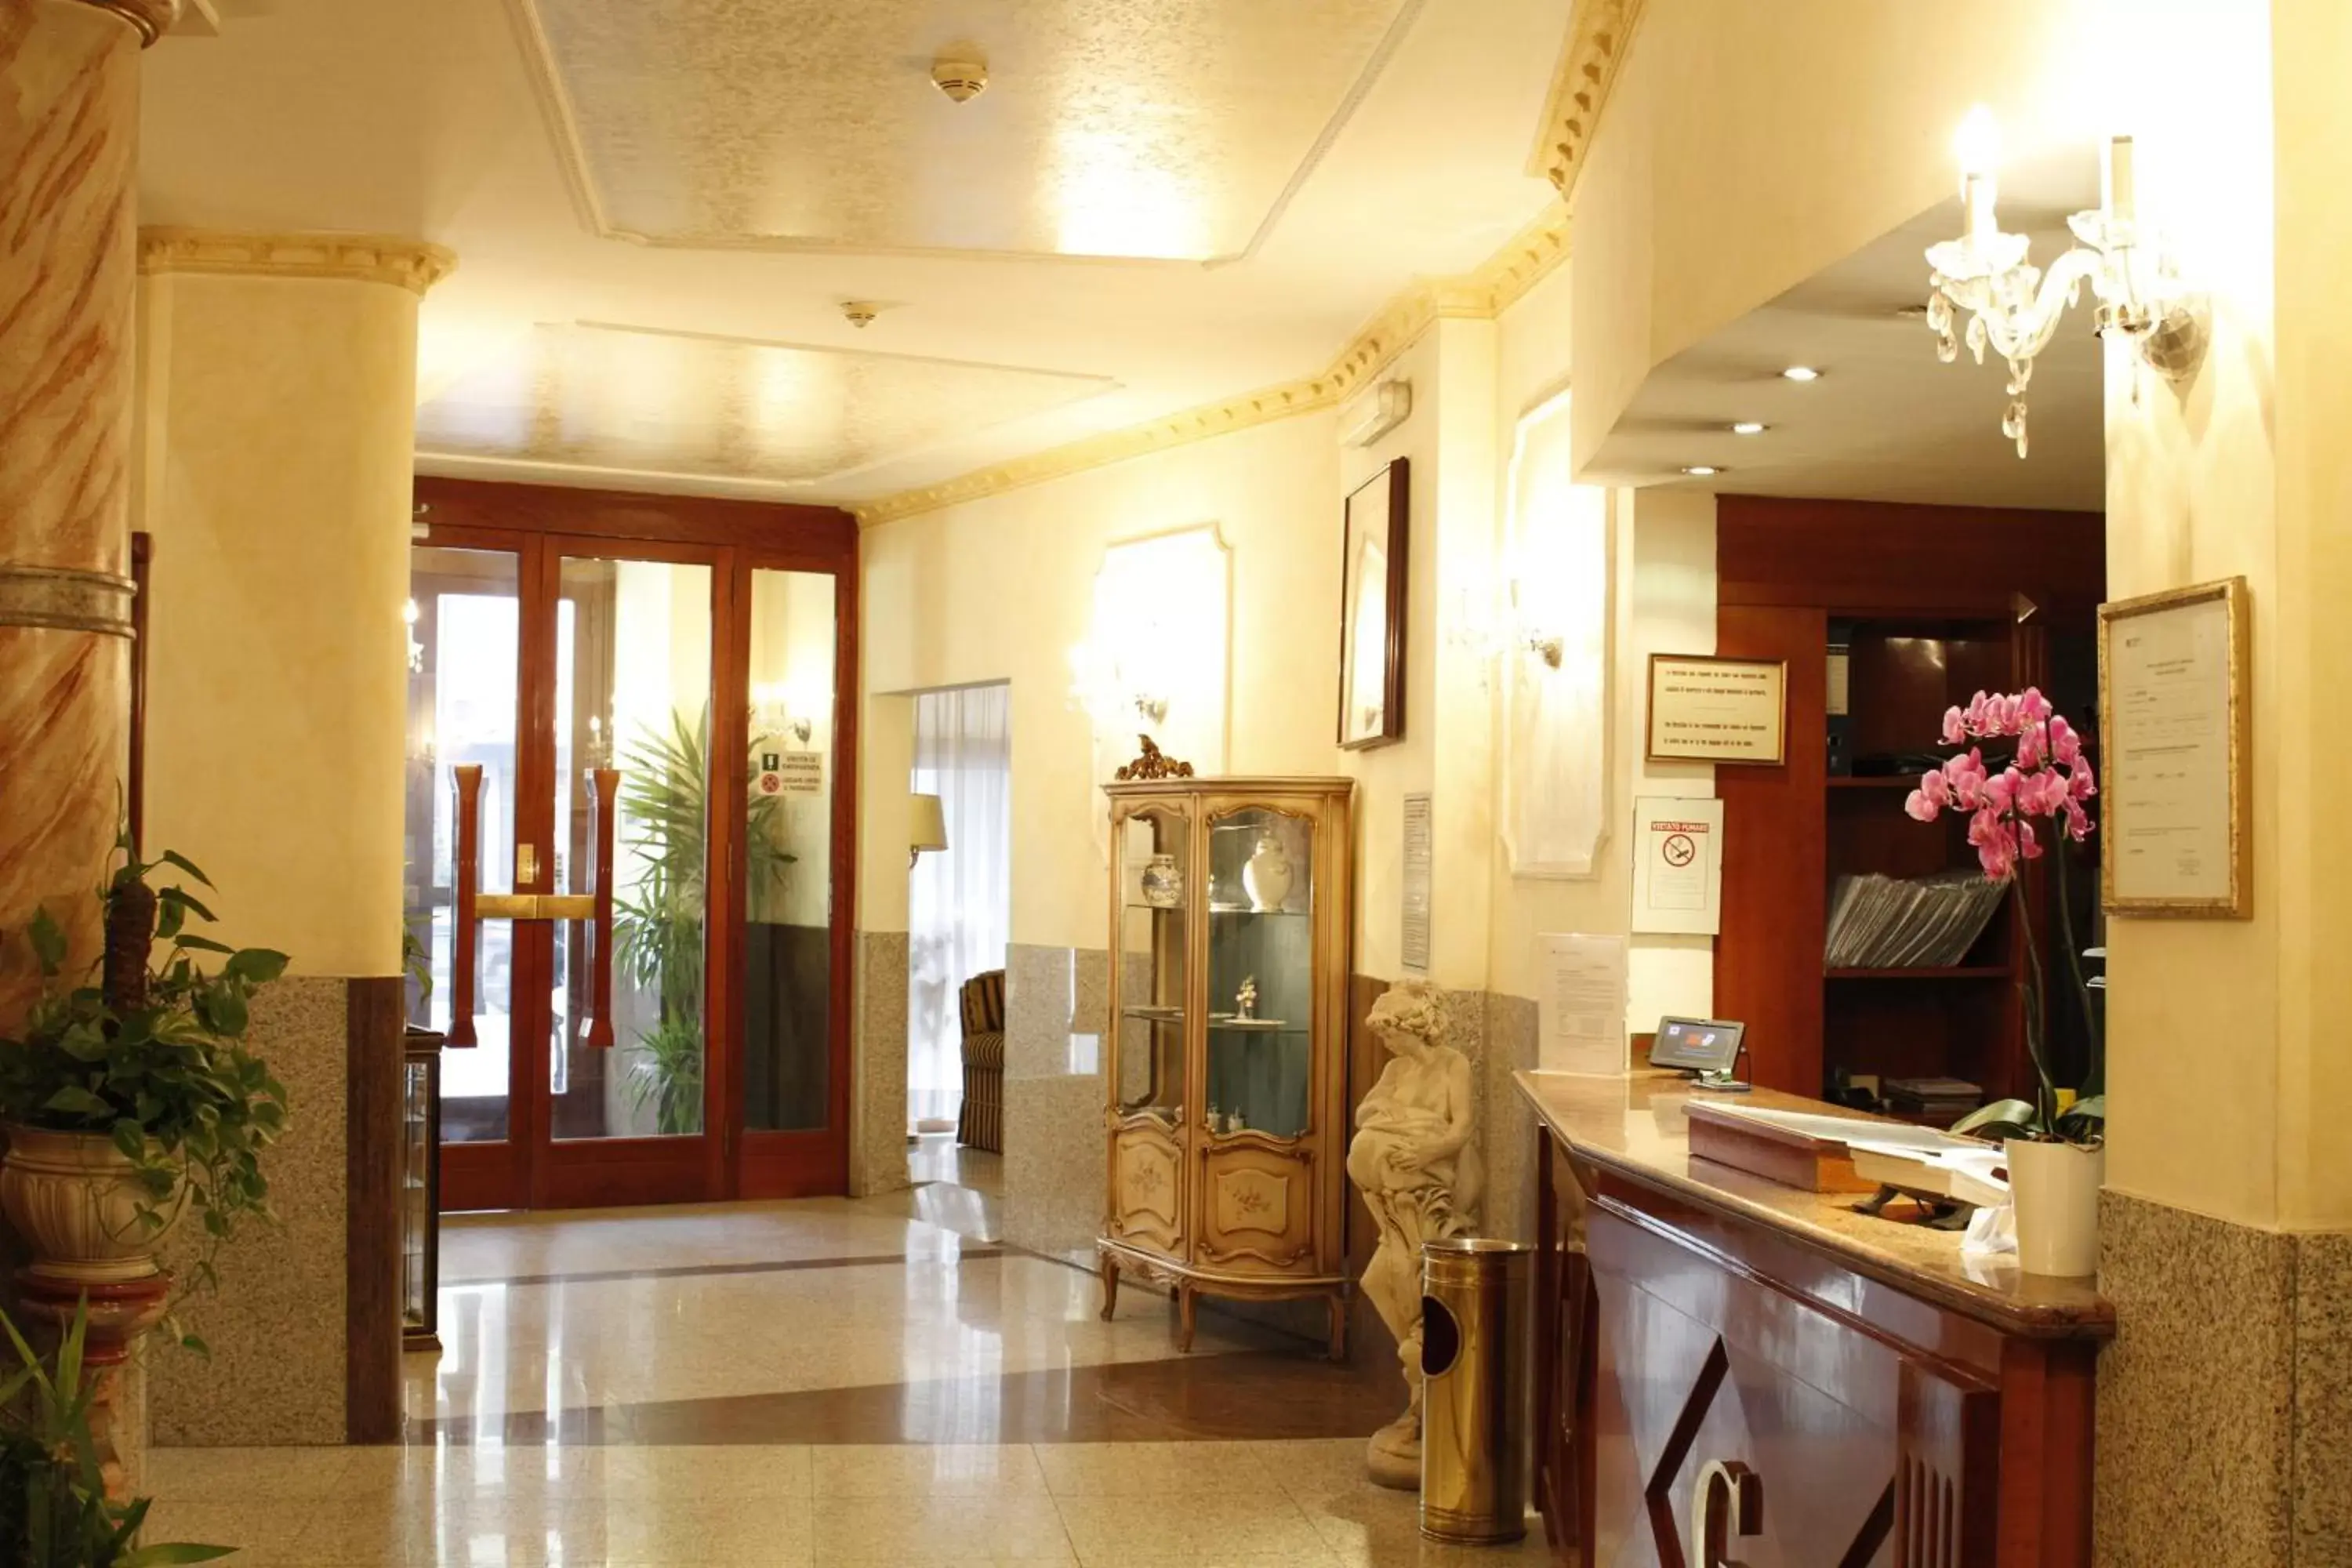 Lobby or reception, Lobby/Reception in Hotel Genio